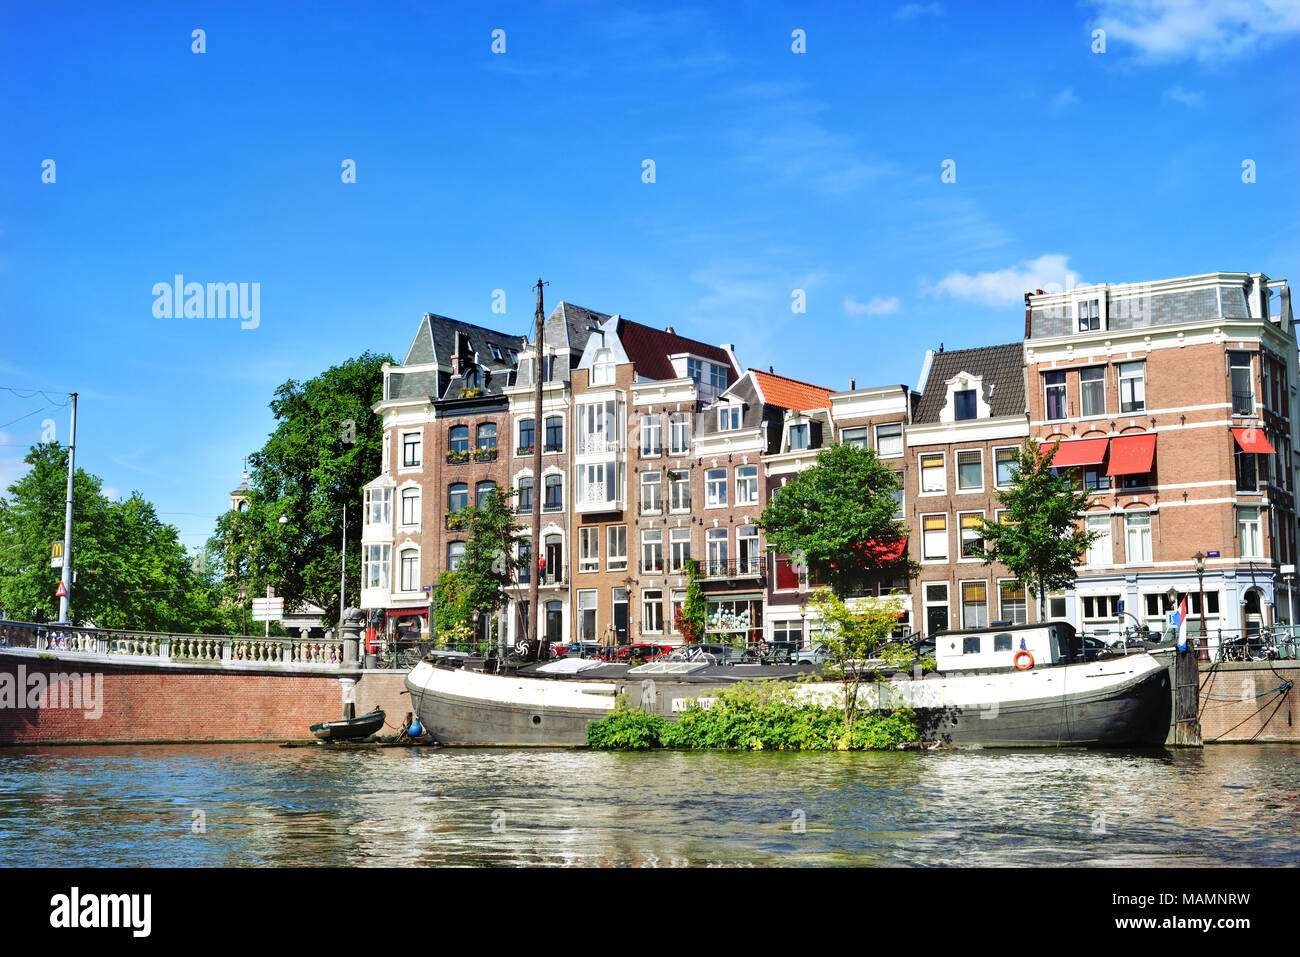 Kanal oder Gracht in Amsterdam City. Amstel Szene mit Boote und alte Häuser. Stockfoto